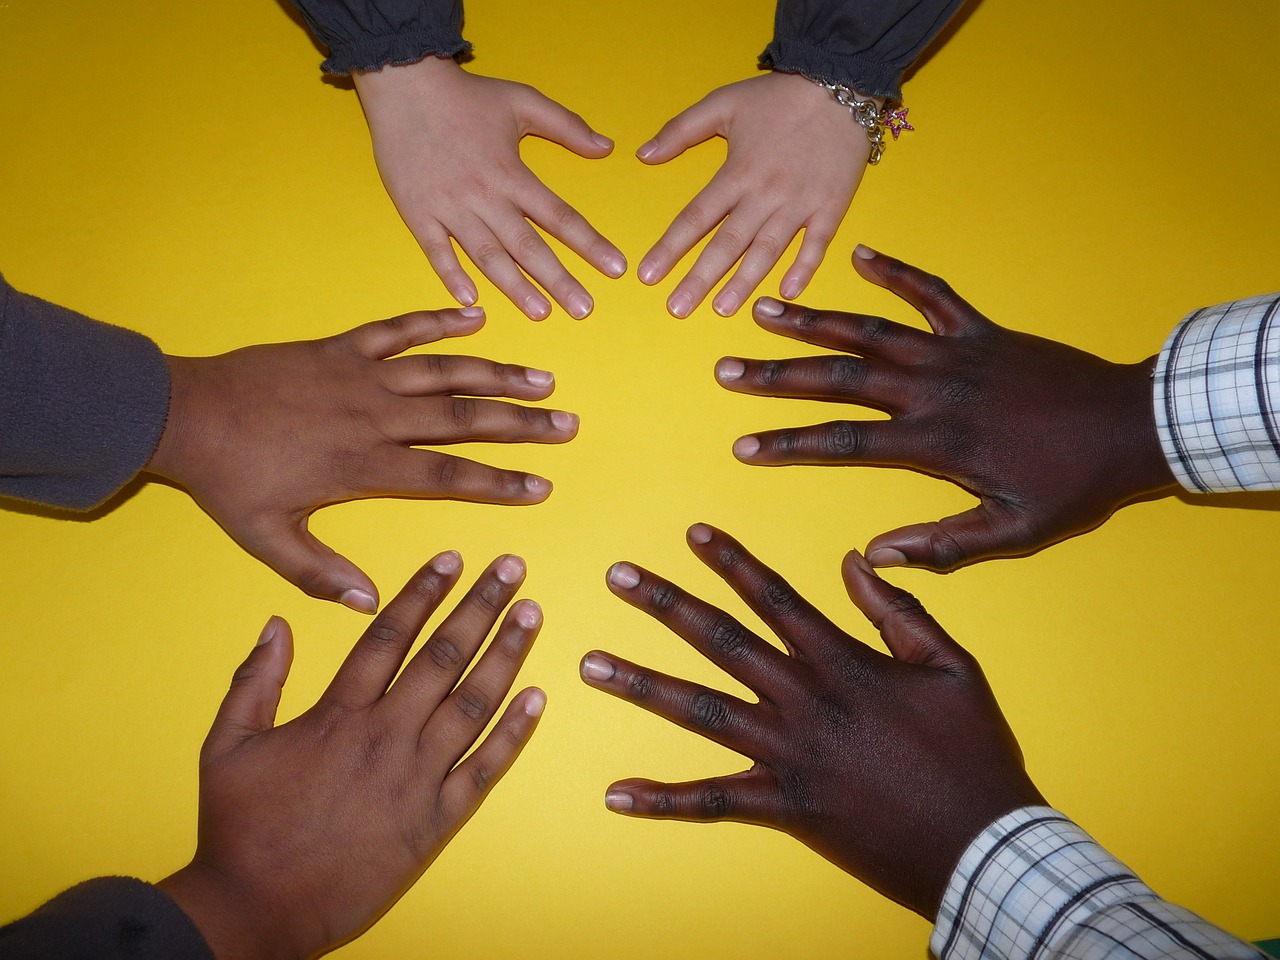 Sechs zueinander gehaltene Hände in verschiedenen Hautfarben.